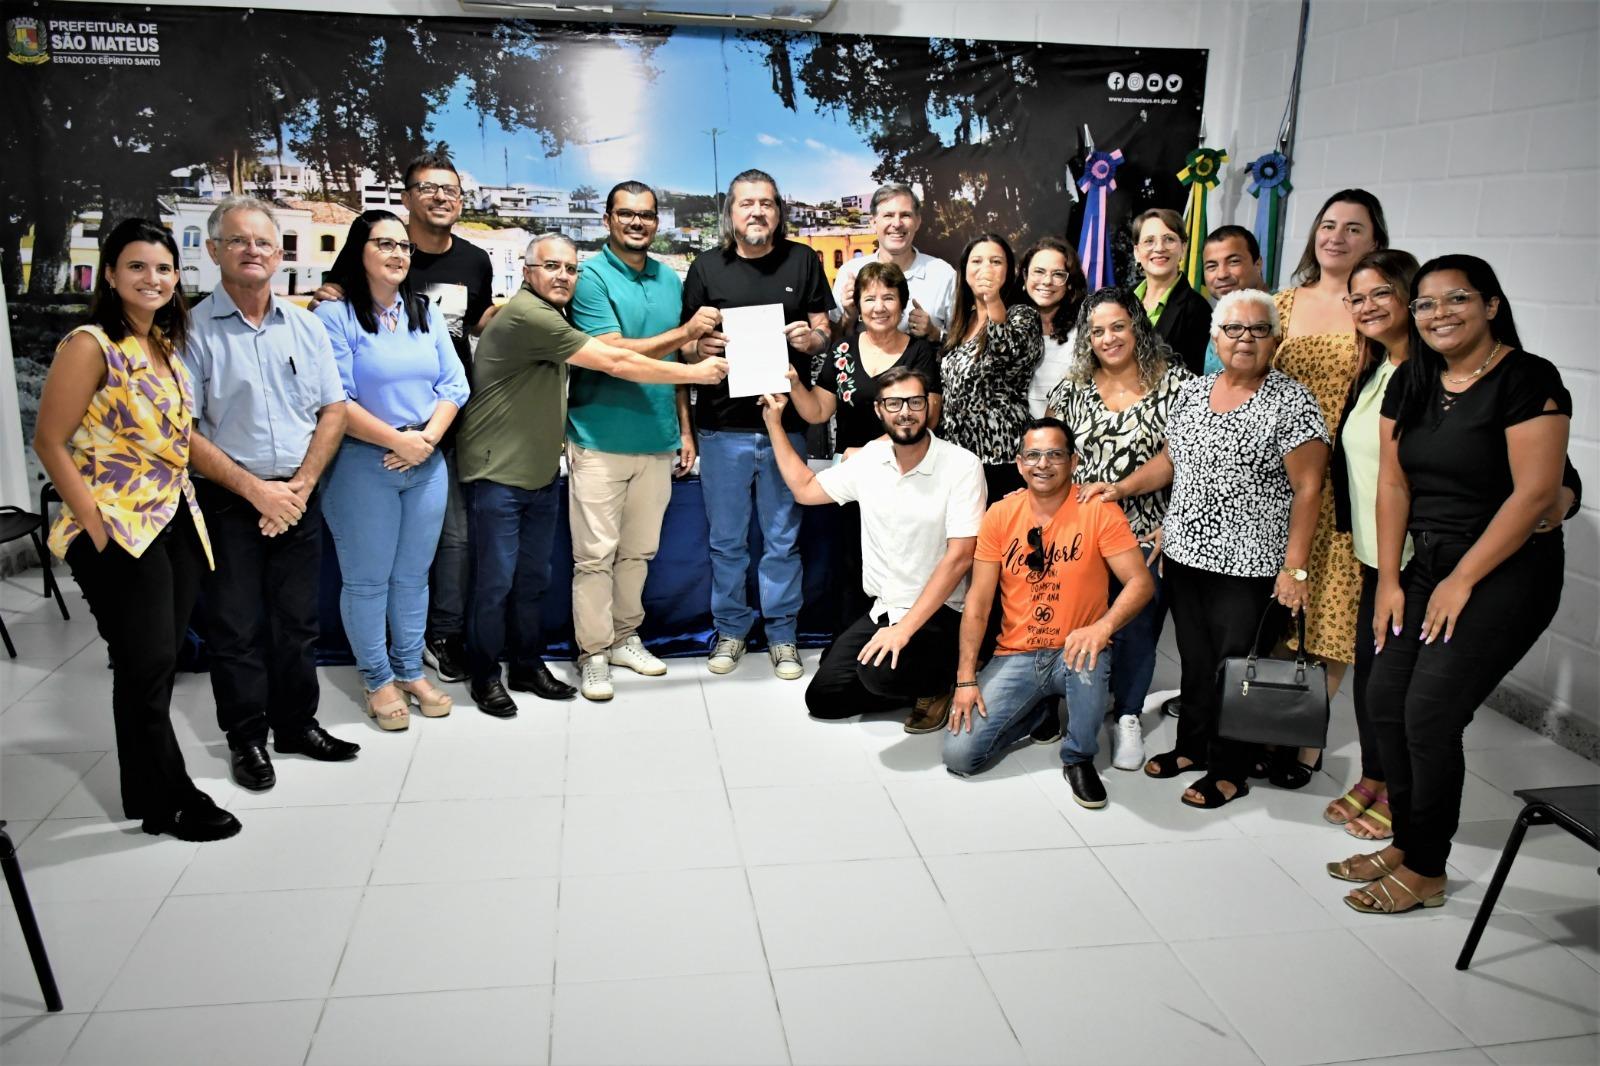 Unidade Básica de Saúde no Parque das Brisas vai beneficiar várias comunidades, em São Mateus, ES